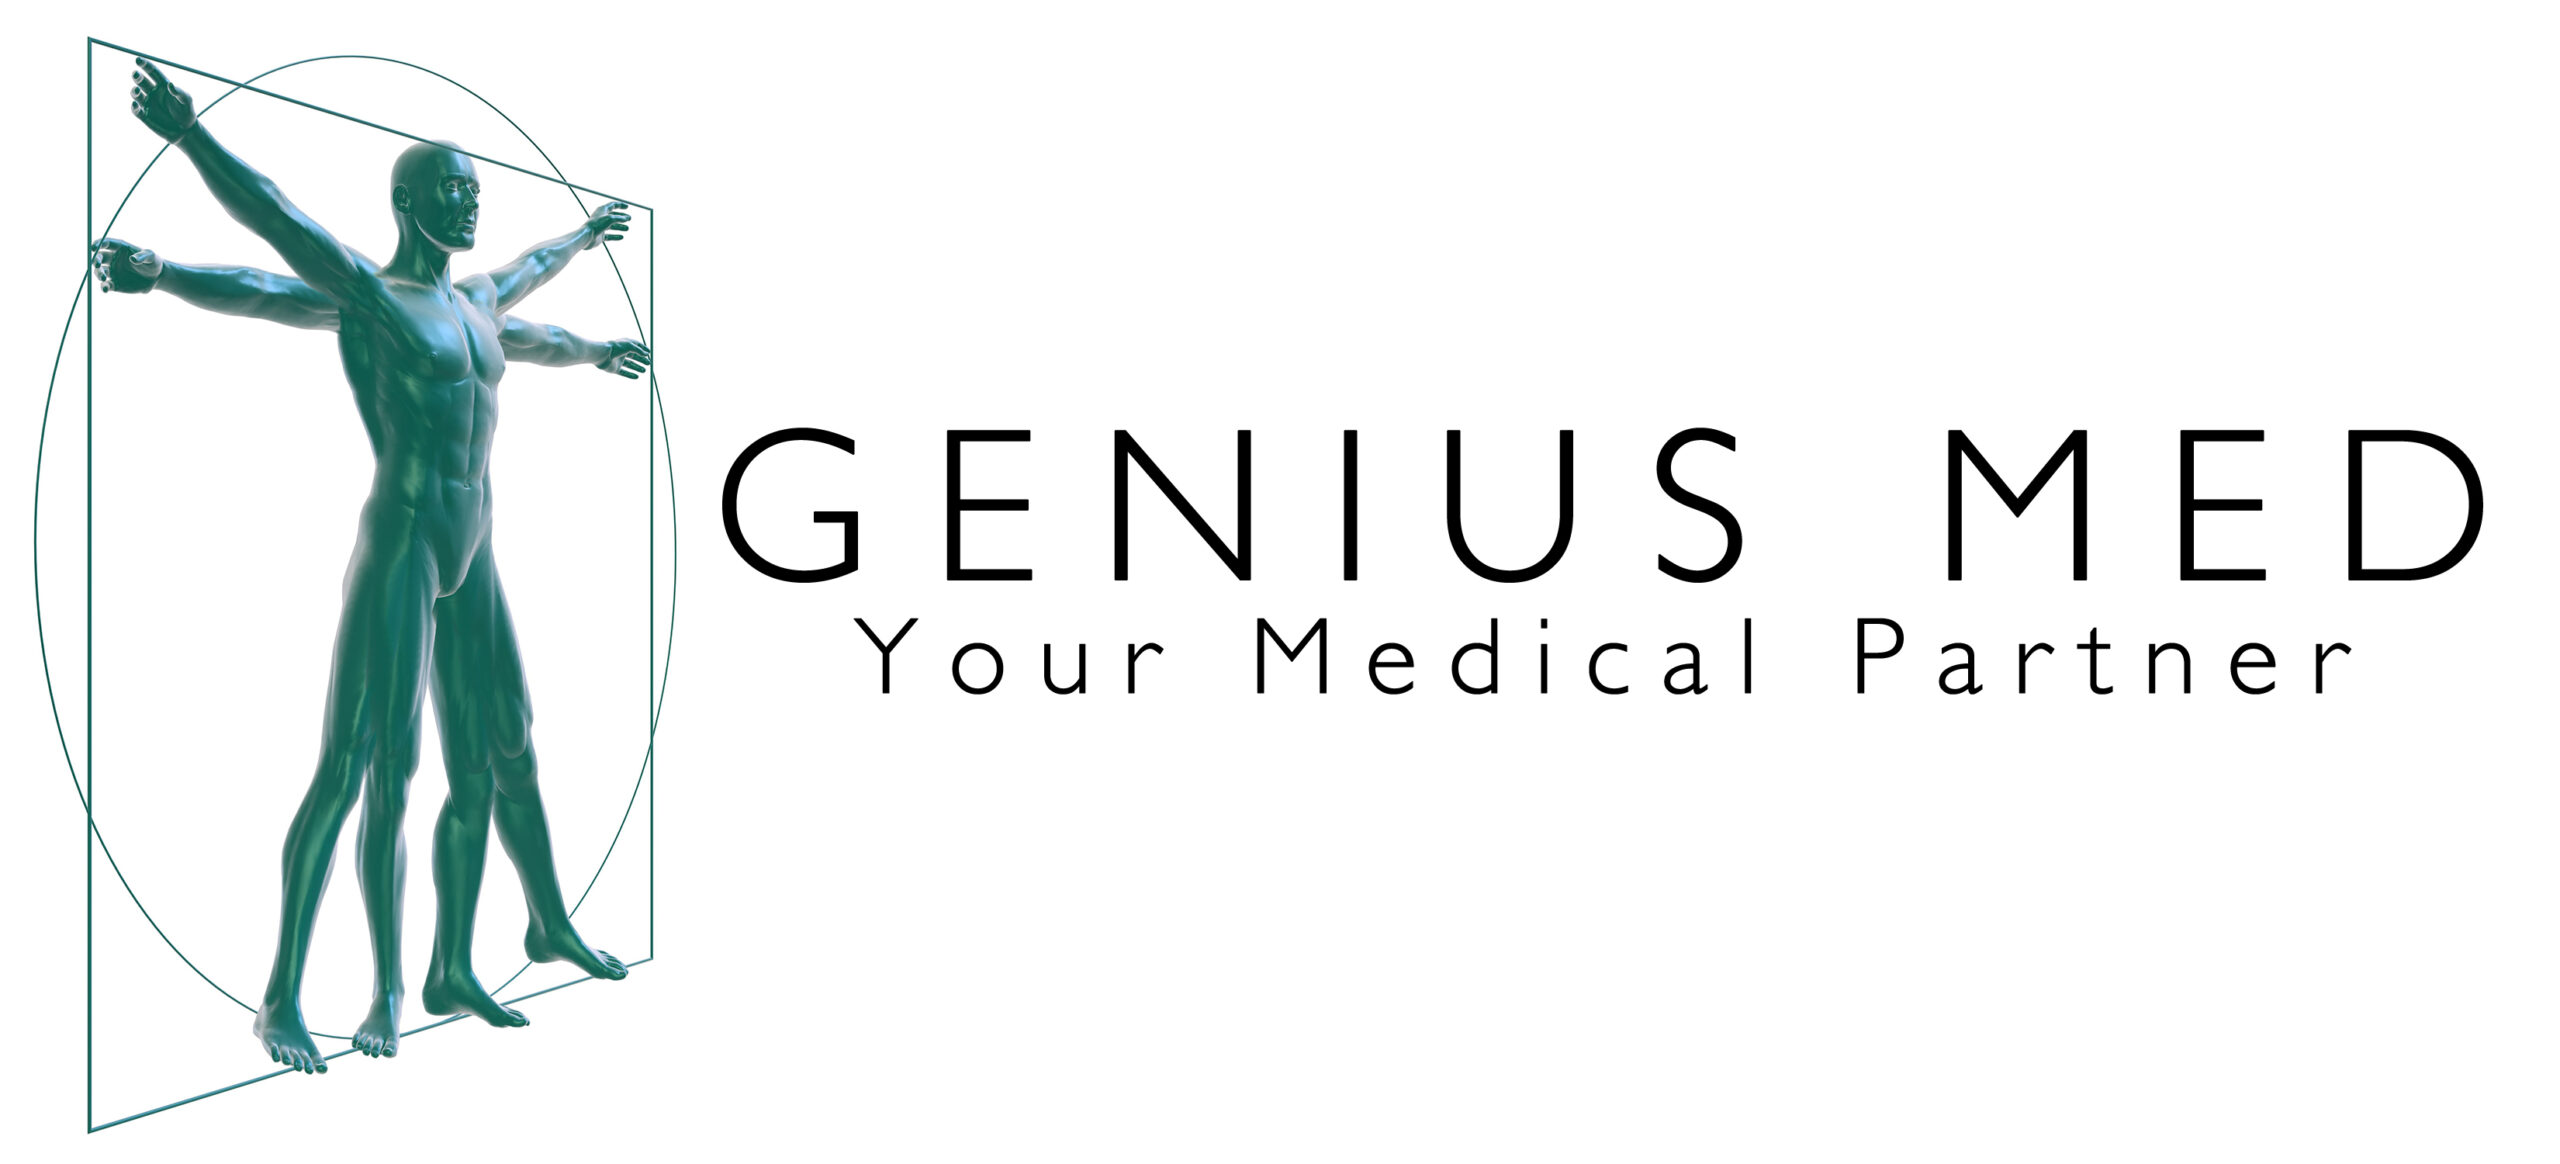 Genius Med - Your Medical Partner